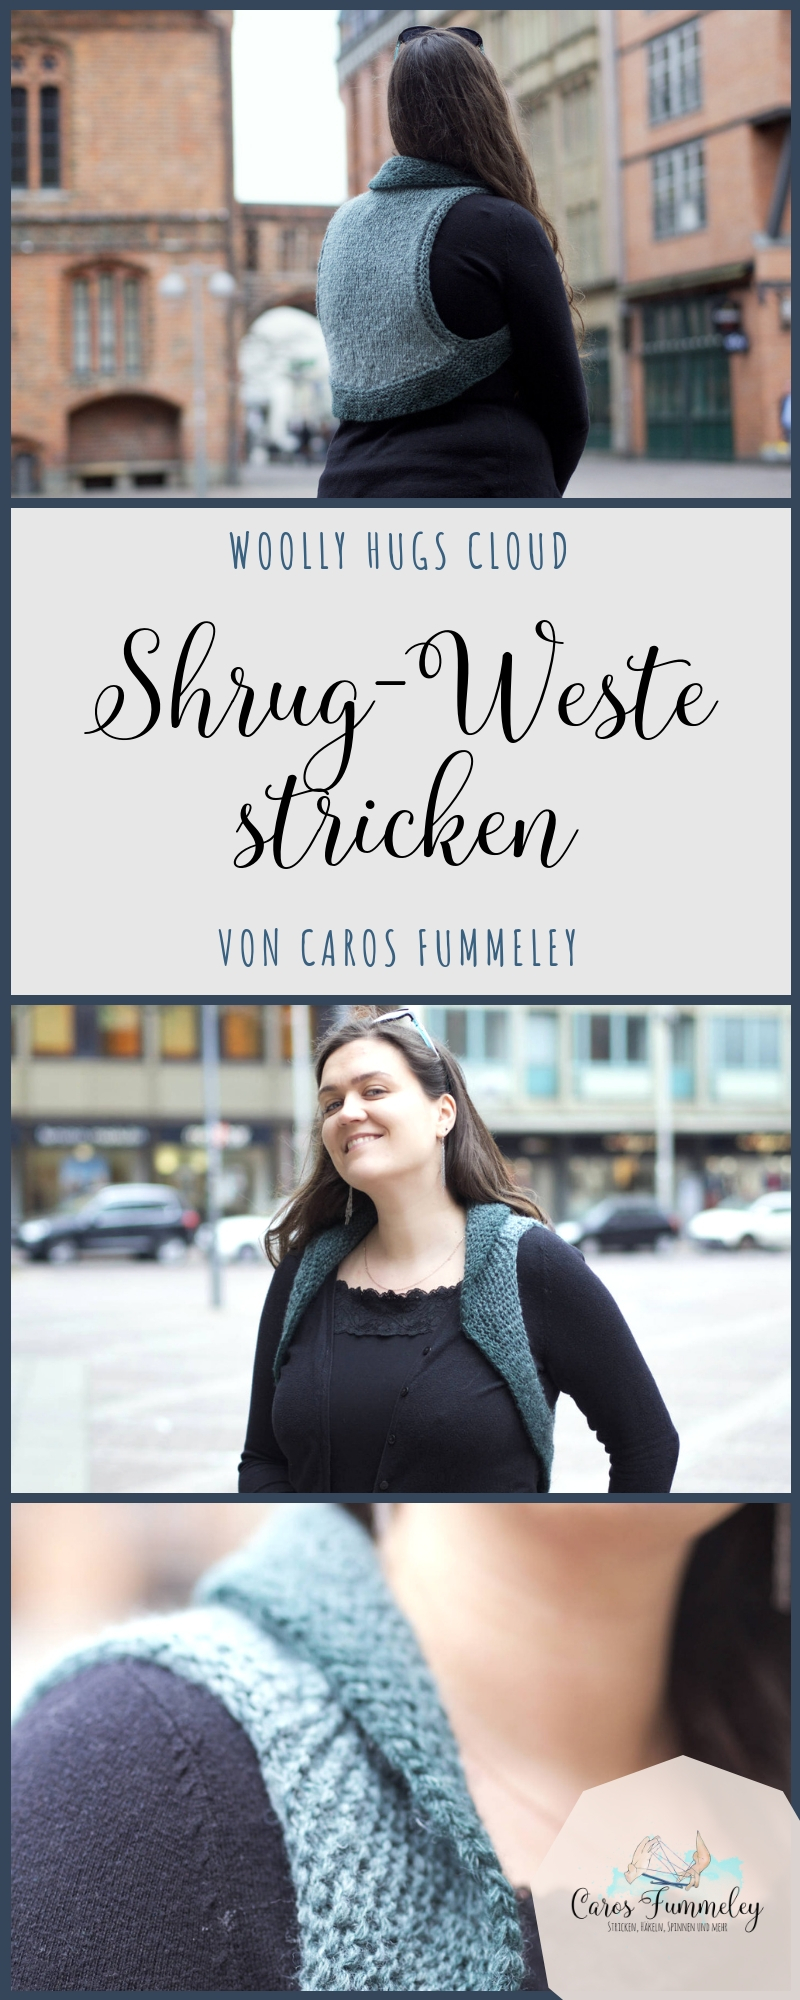 Shrug-Weste aus Cloud von Woolly Hugs stricken - Anleitungs- und Garntipp